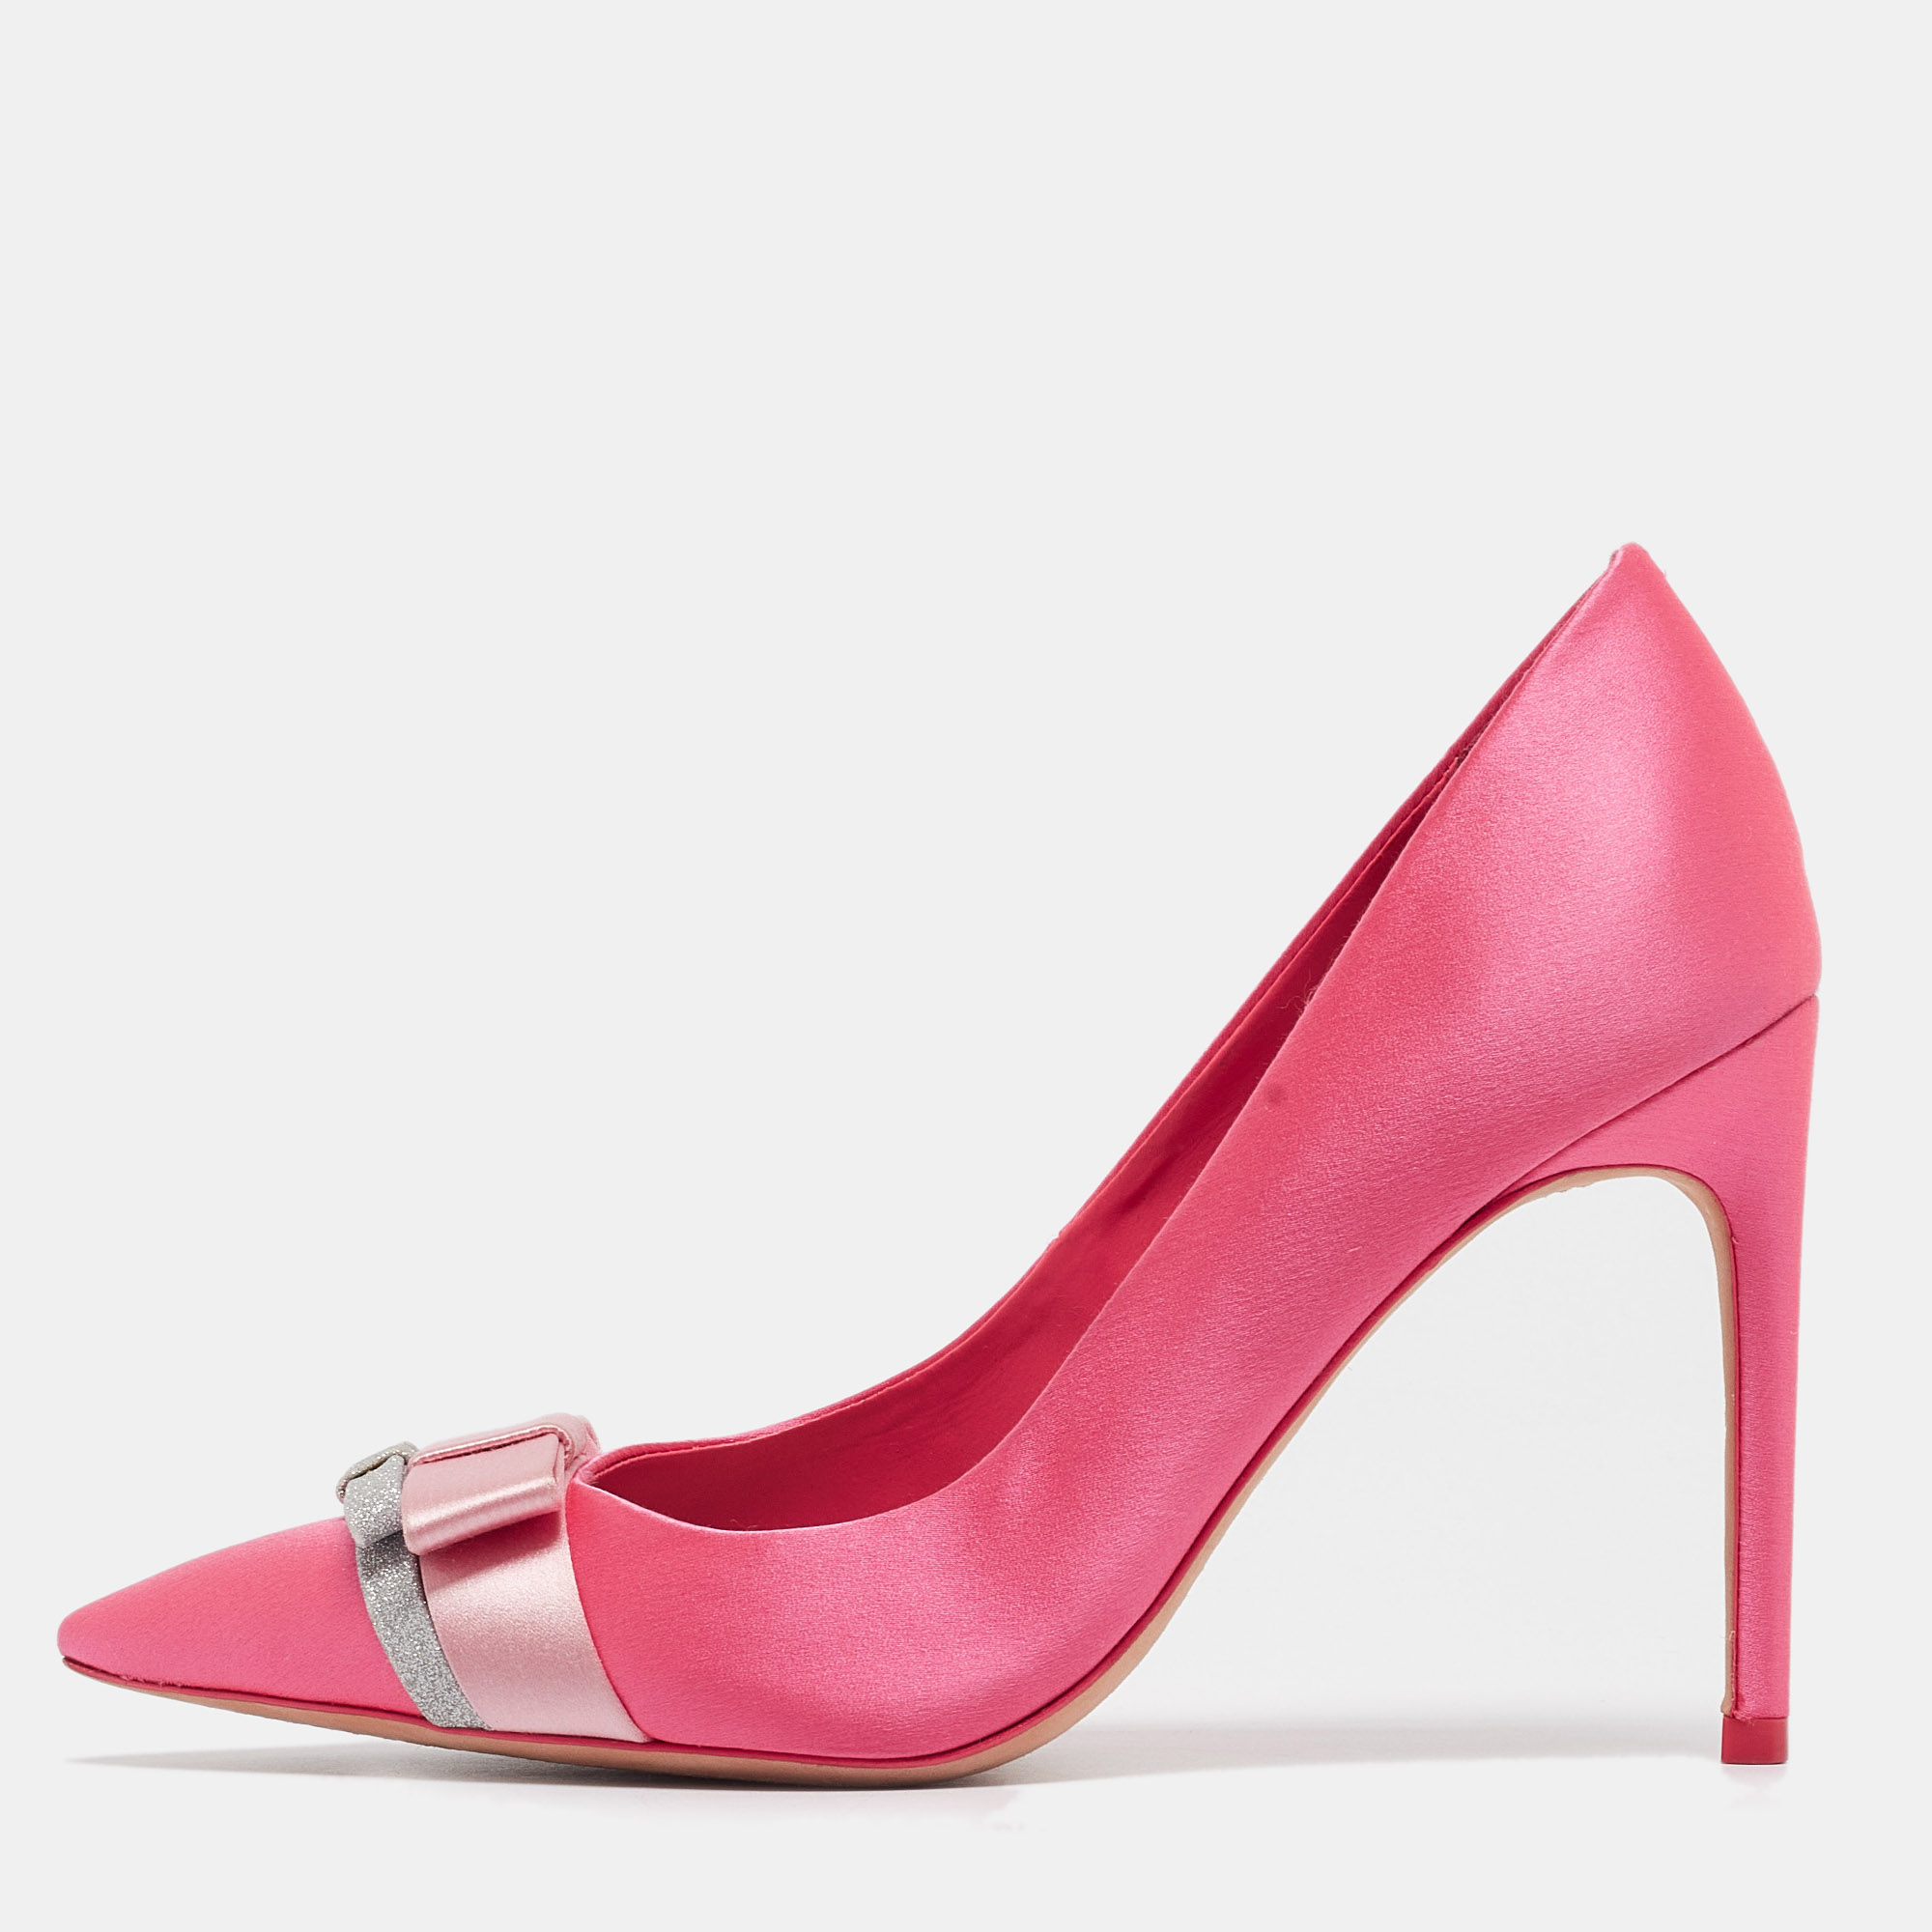 Sophia webster pink satin bow pumps size 38.5